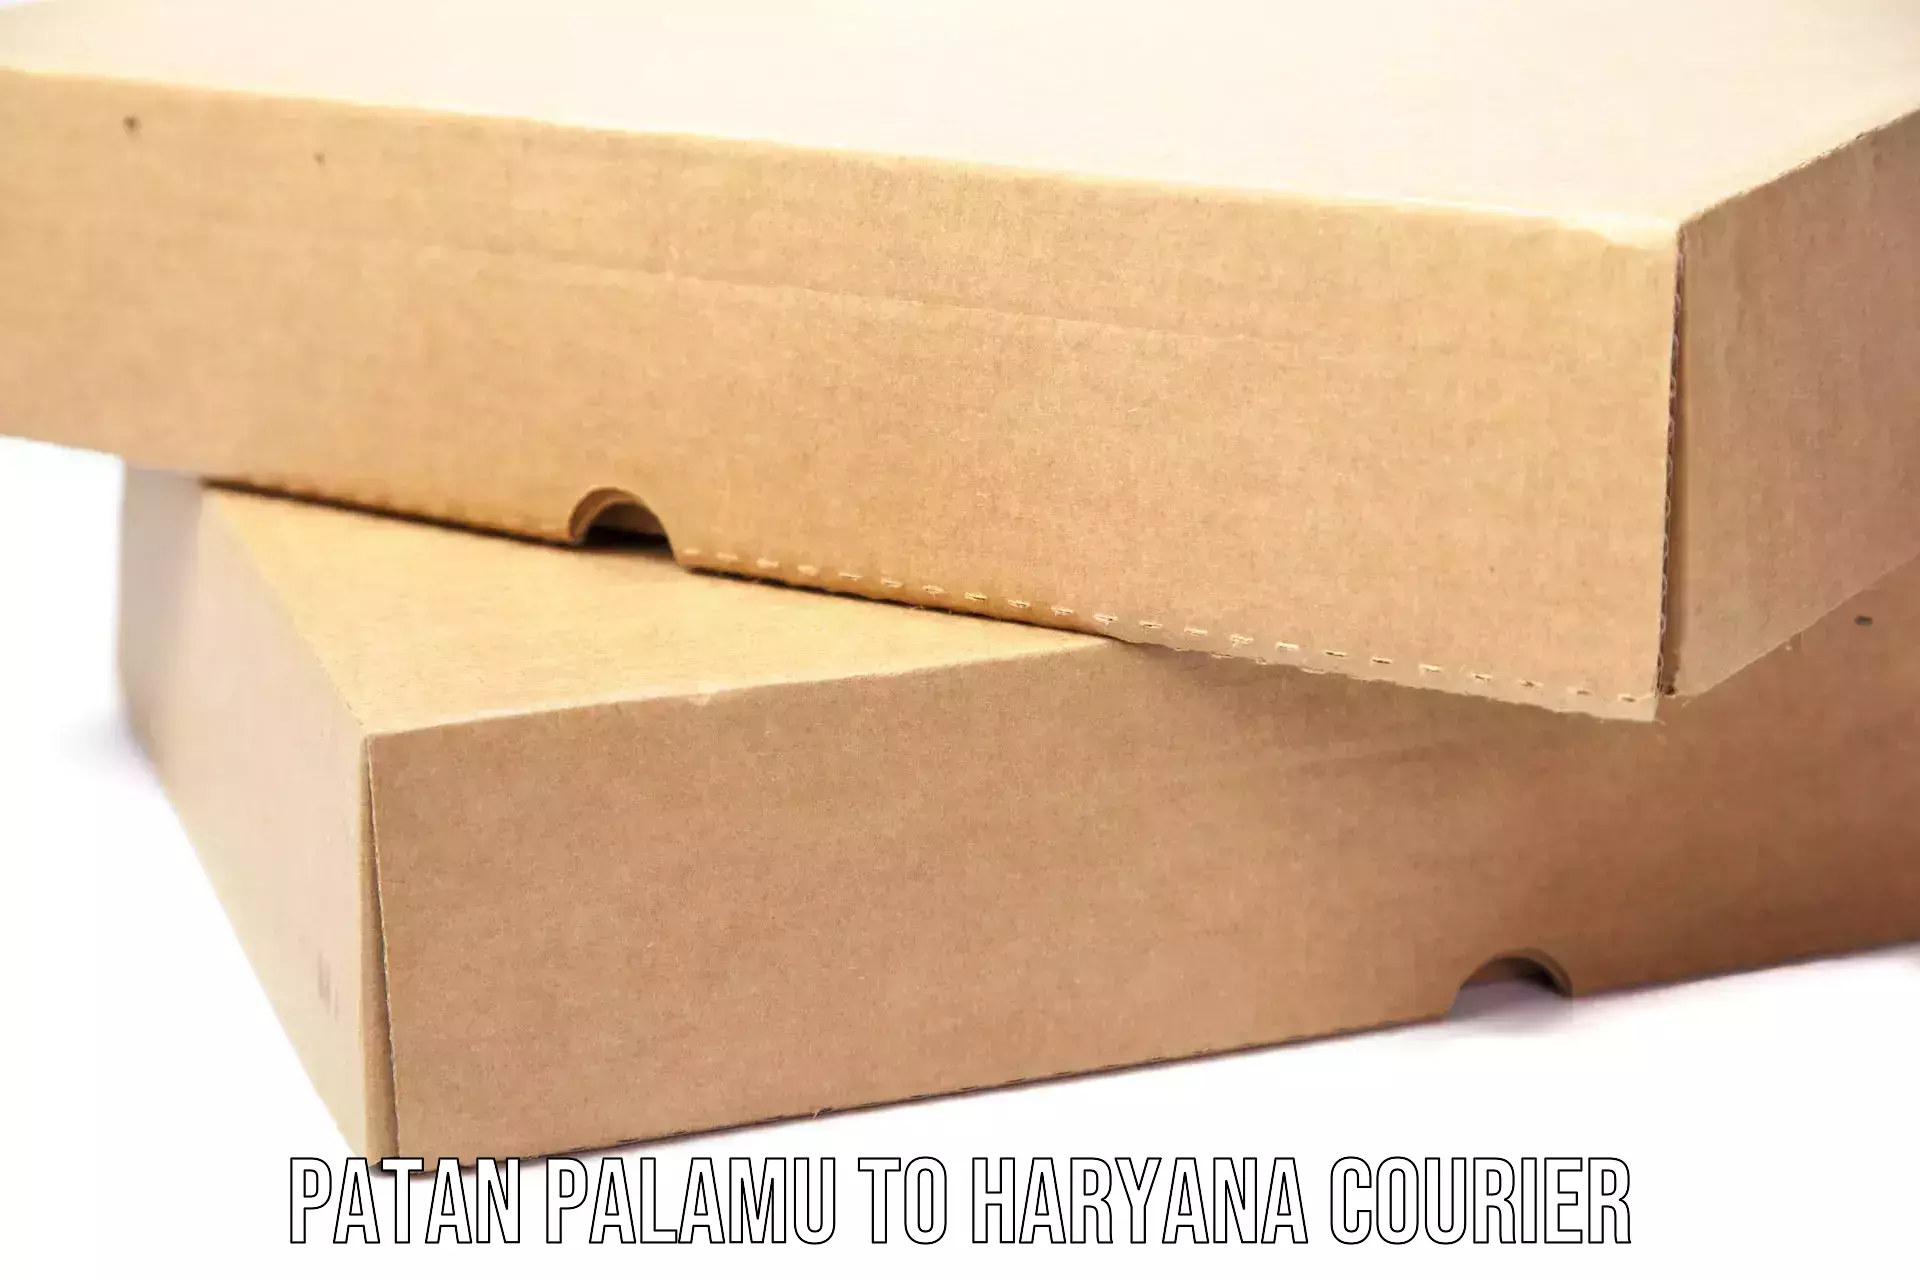 Commercial shipping rates Patan Palamu to Chirya